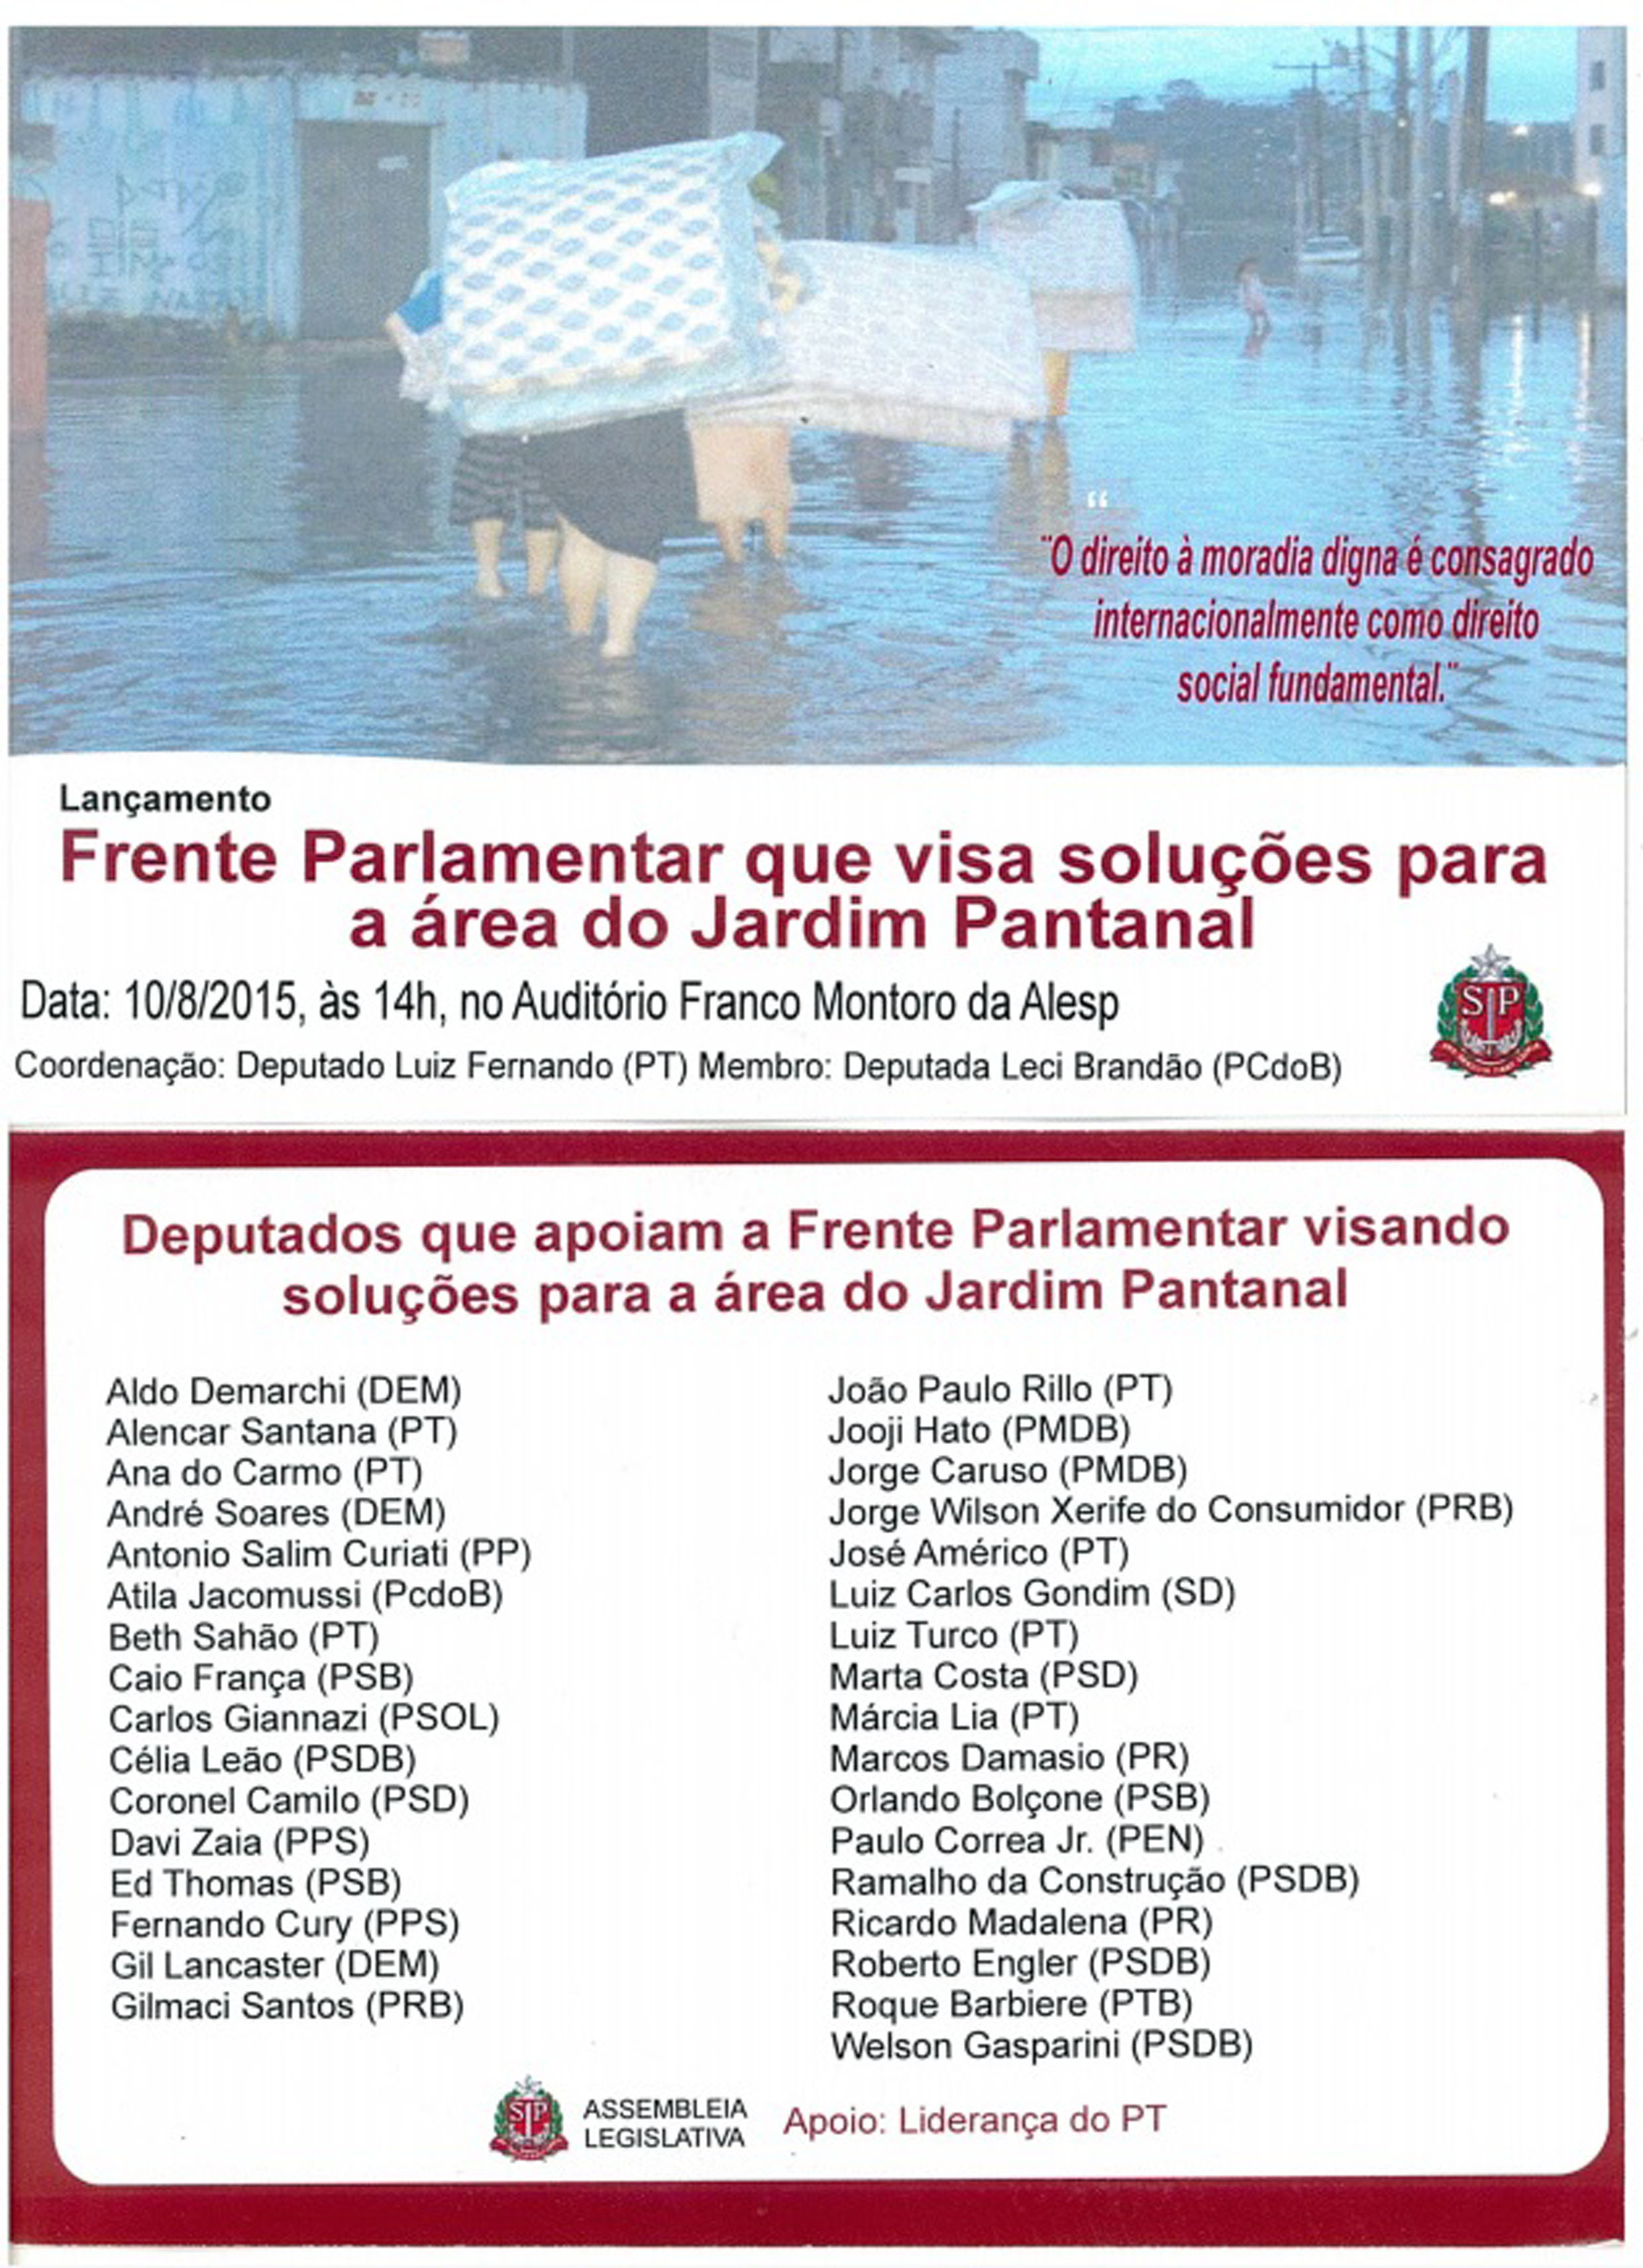 Cartaz divulga lanamento de frente parlamentar em prol do Jardim Pantanal<a style='float:right;color:#ccc' href='https://www3.al.sp.gov.br/repositorio/noticia/N-07-2015/fg173292.jpg' target=_blank><i class='bi bi-zoom-in'></i> Clique para ver a imagem </a>